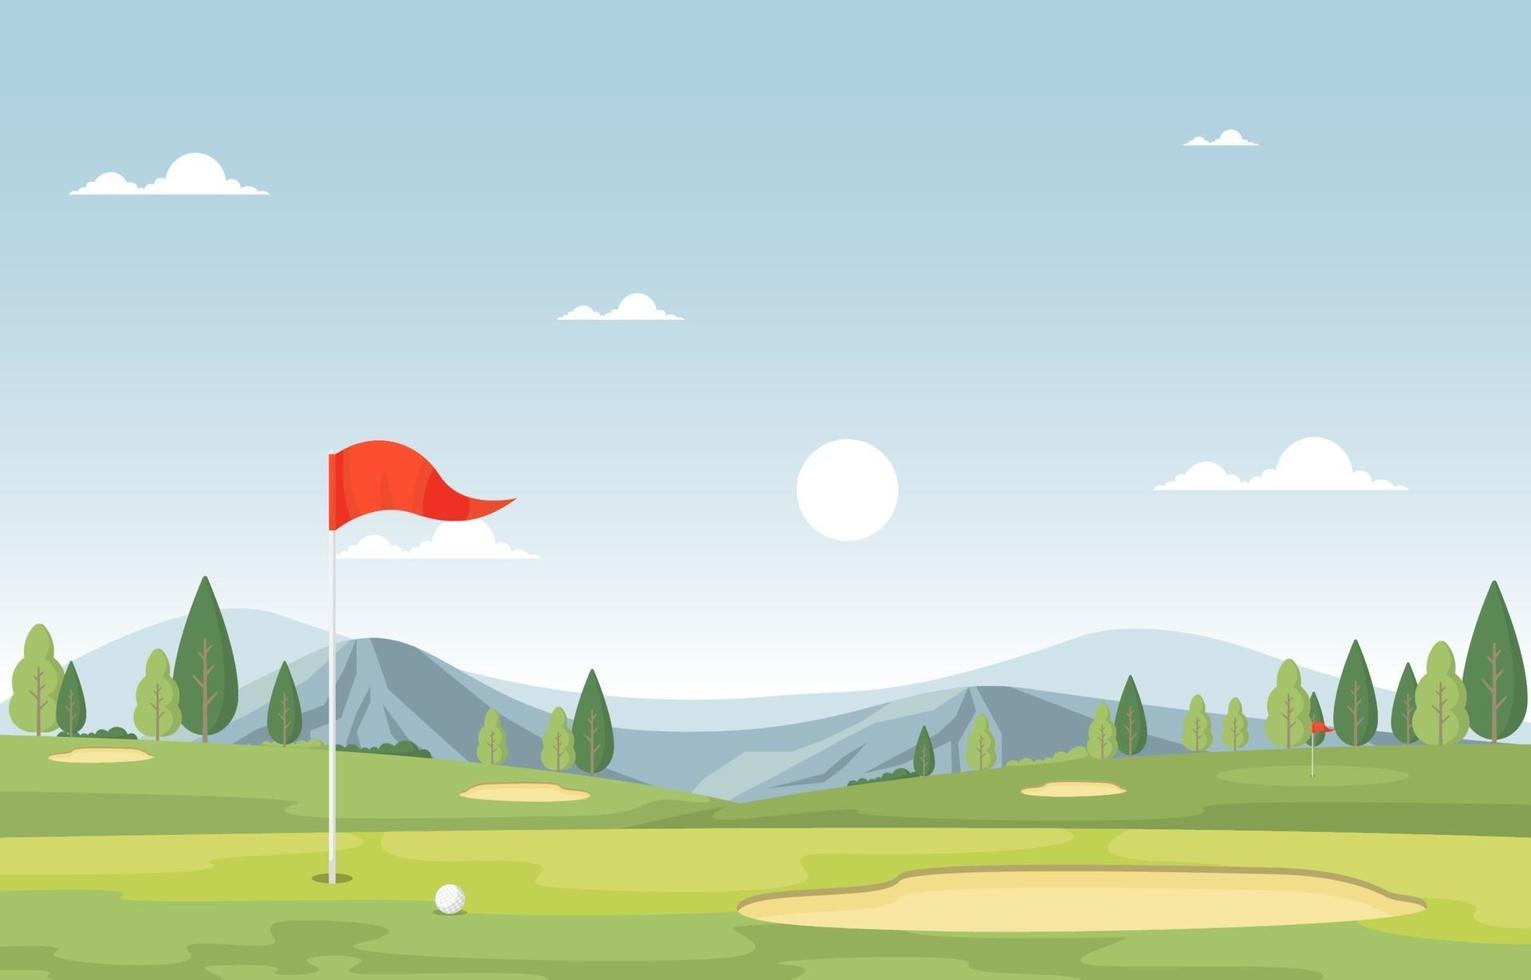 campo de golfe com bandeira vermelha, árvores e montanhas vetor